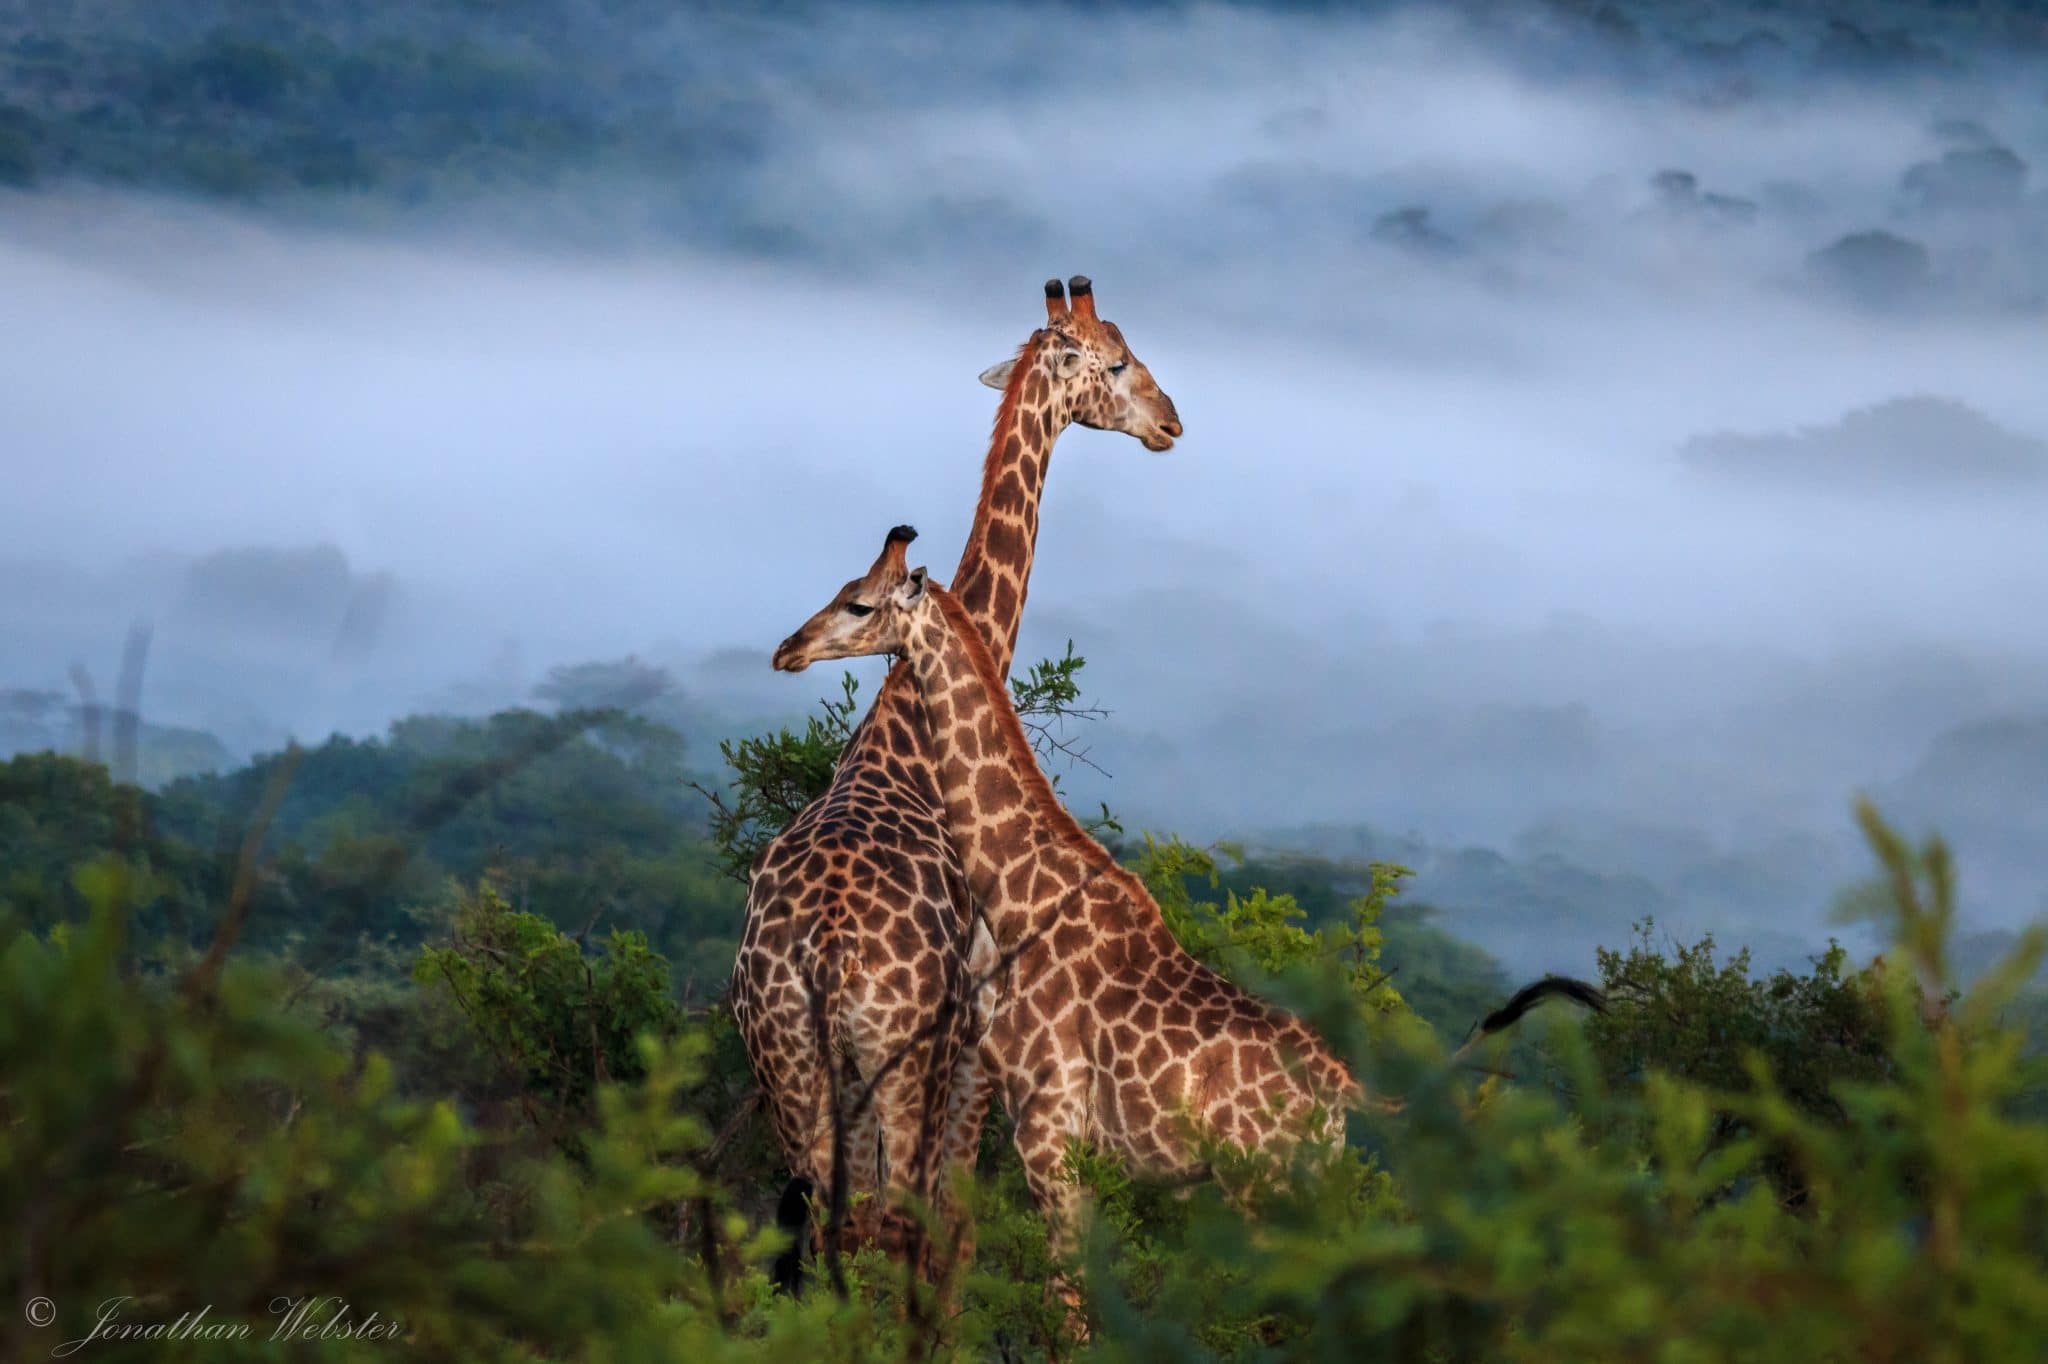 Giraffen in Hluhluwe iMfolozi Park Zuid-Afrika